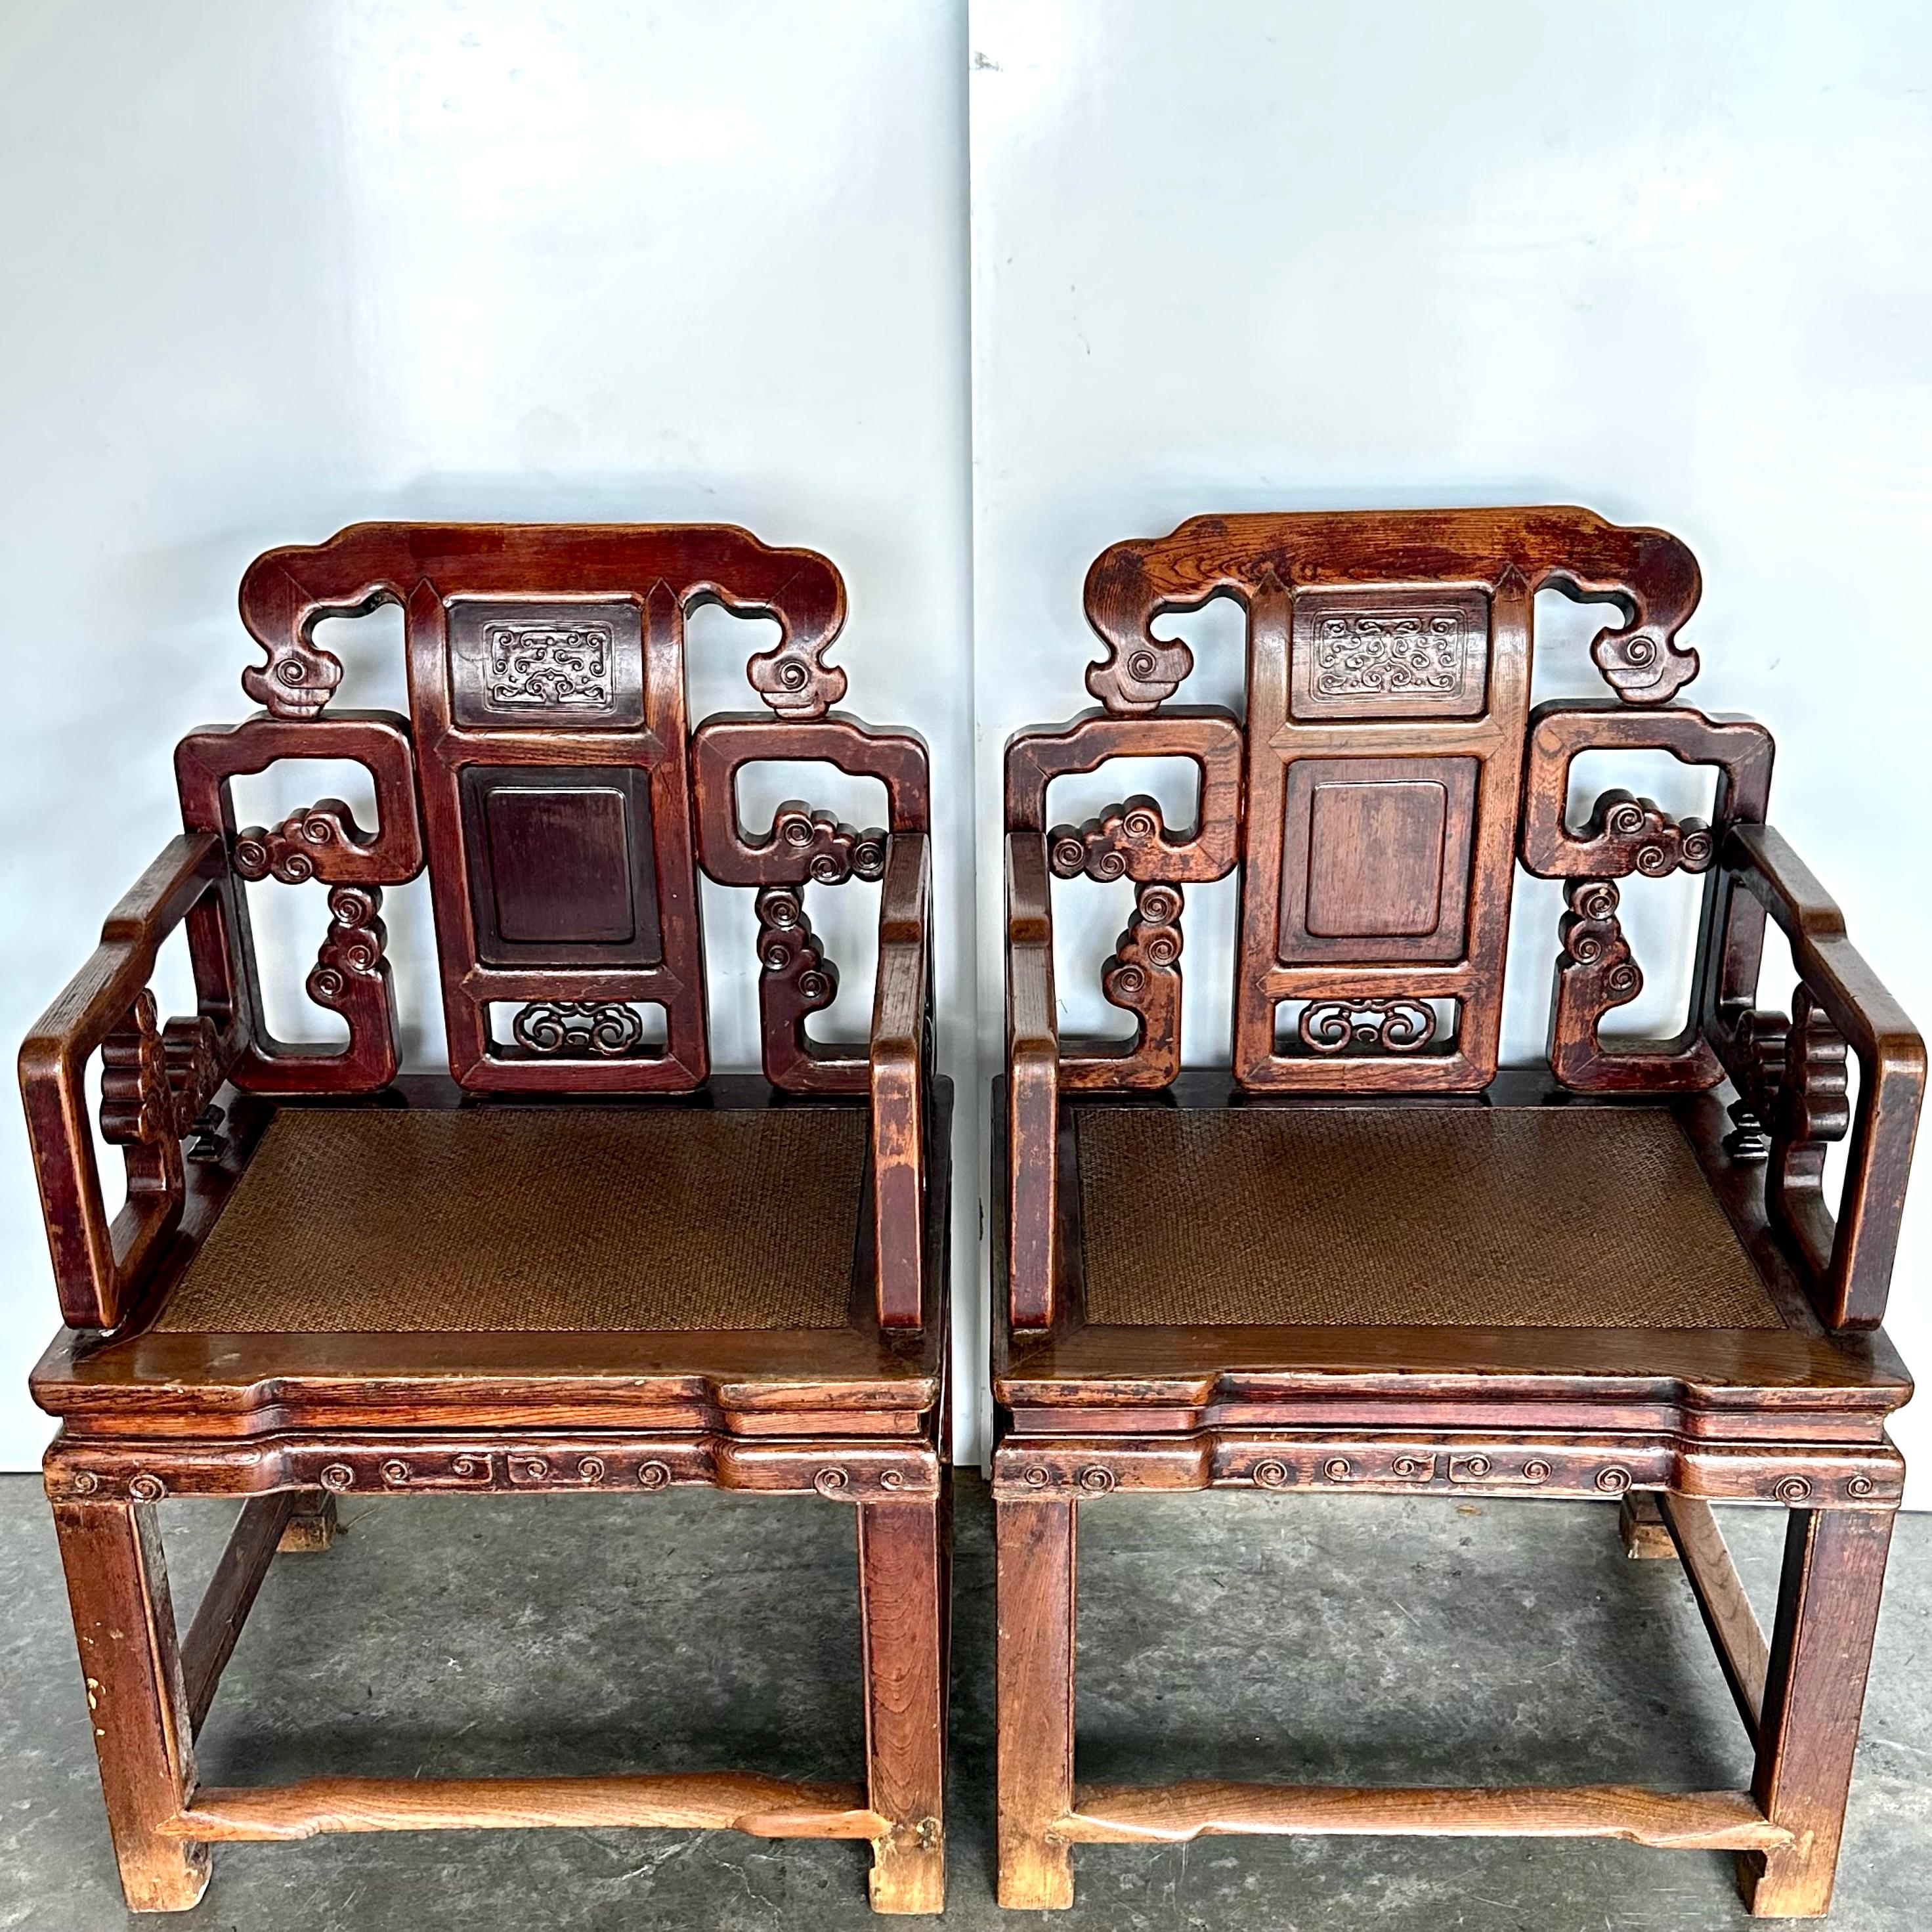 Ein Paar große Jumu-Sessel (südliche Ulme) aus der späten Qing-Zeit. Diese Art von Sesseln, bei denen die Rückenlehne, die Armlehnen und die Sitzfläche im 90-Grad-Winkel zueinander stehen, werden in China gemeinhin als 